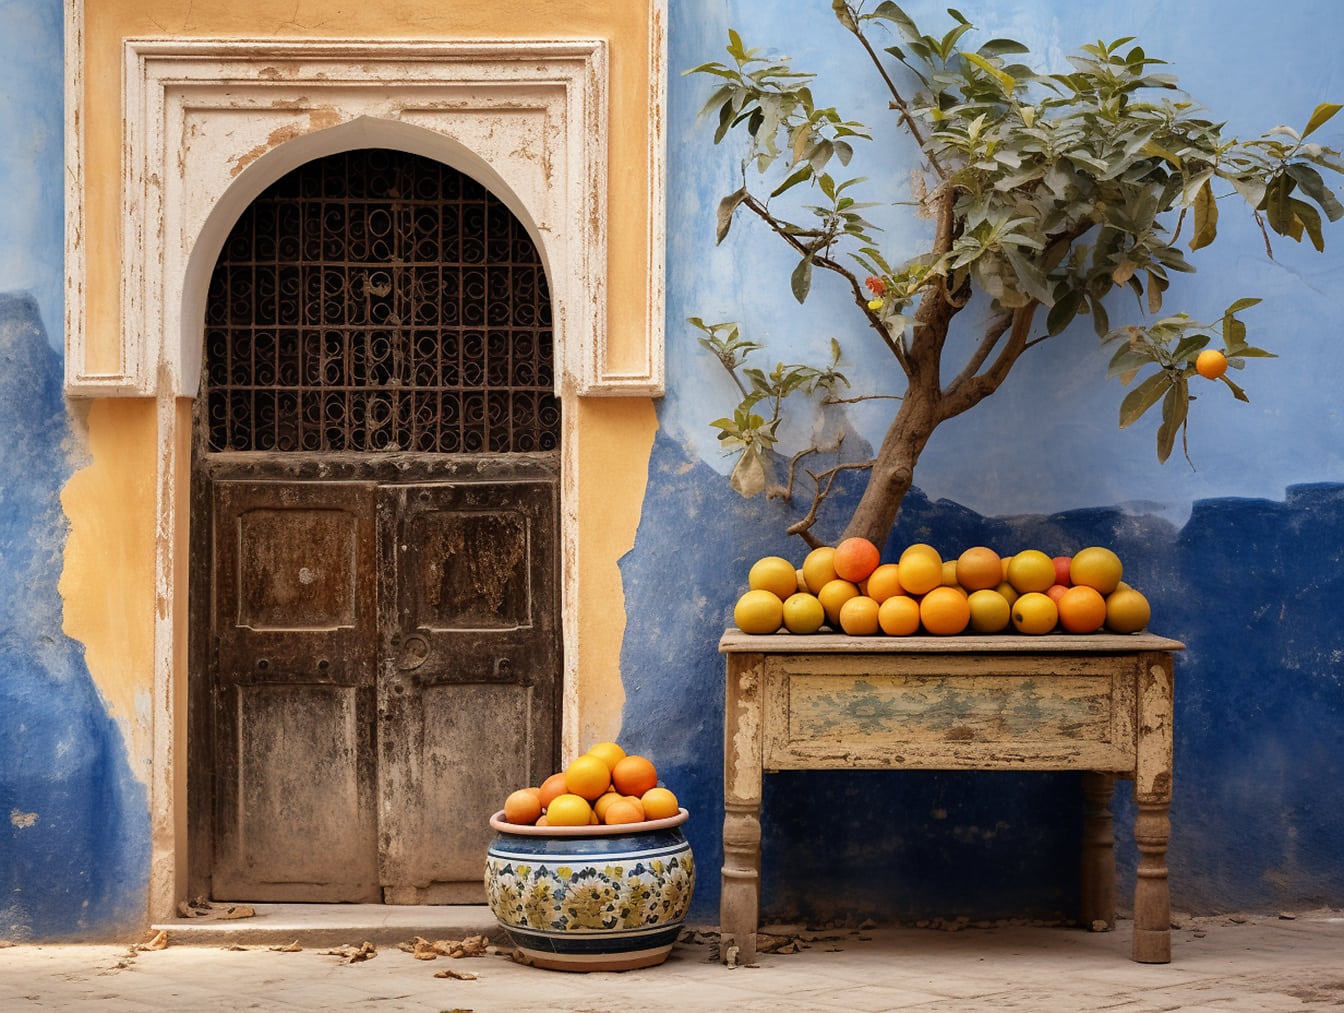 Tisch mit Orangen vor einer blauen Wand in Marokko